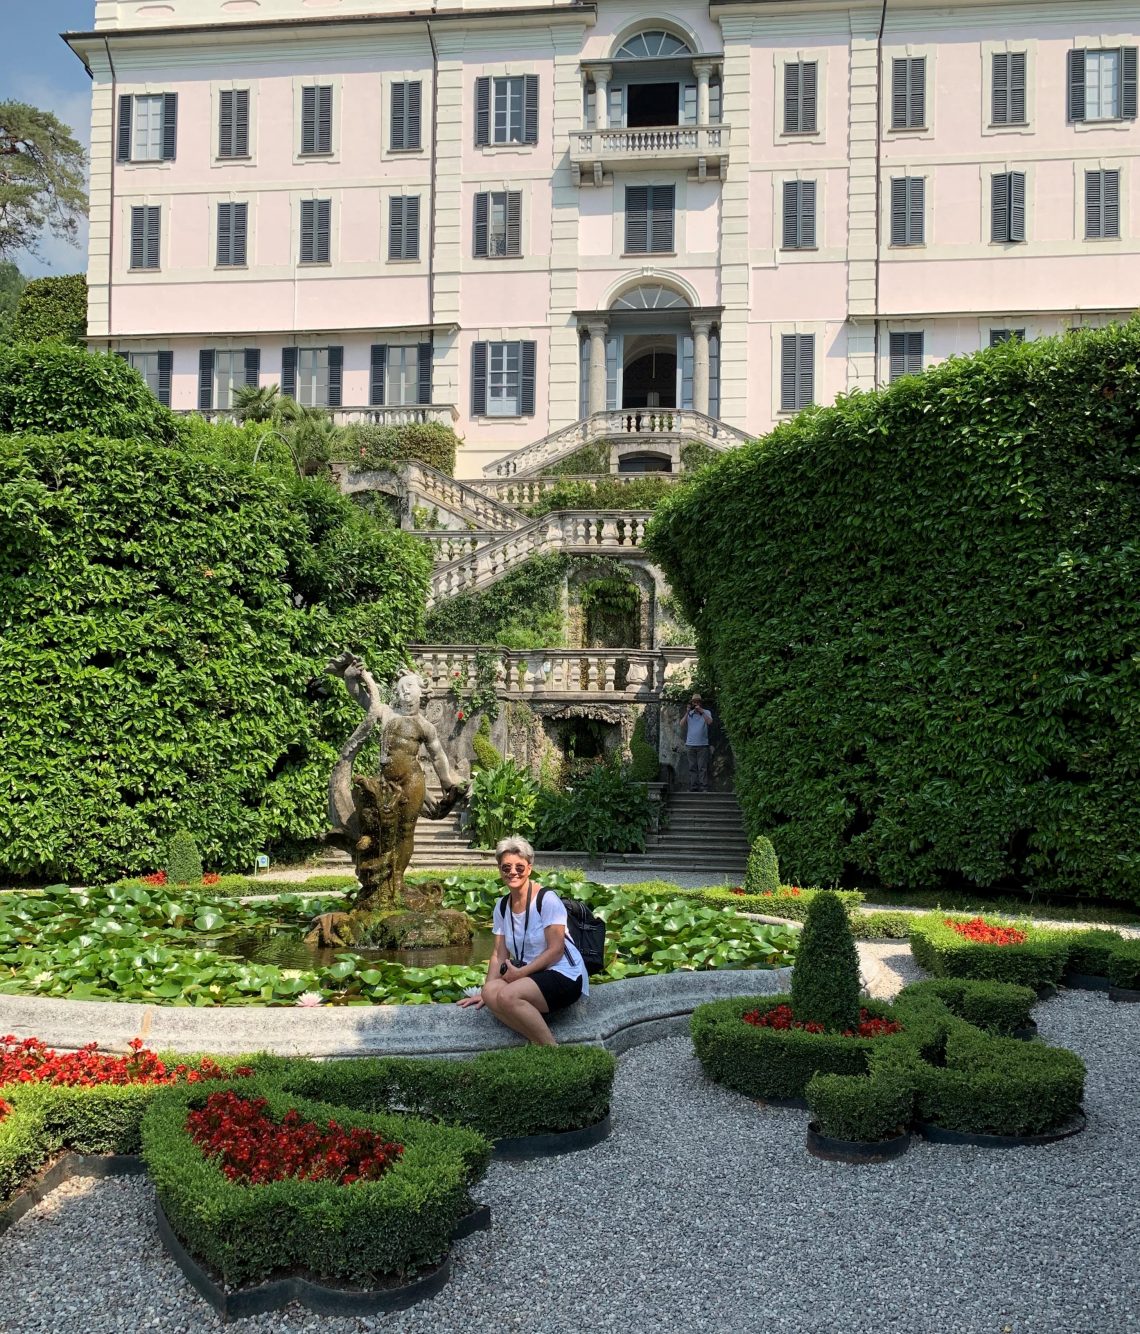 Hagen rund Villa Carlotta i Tremezzo ved Comosjøen - gammel og erværdig arkitektur